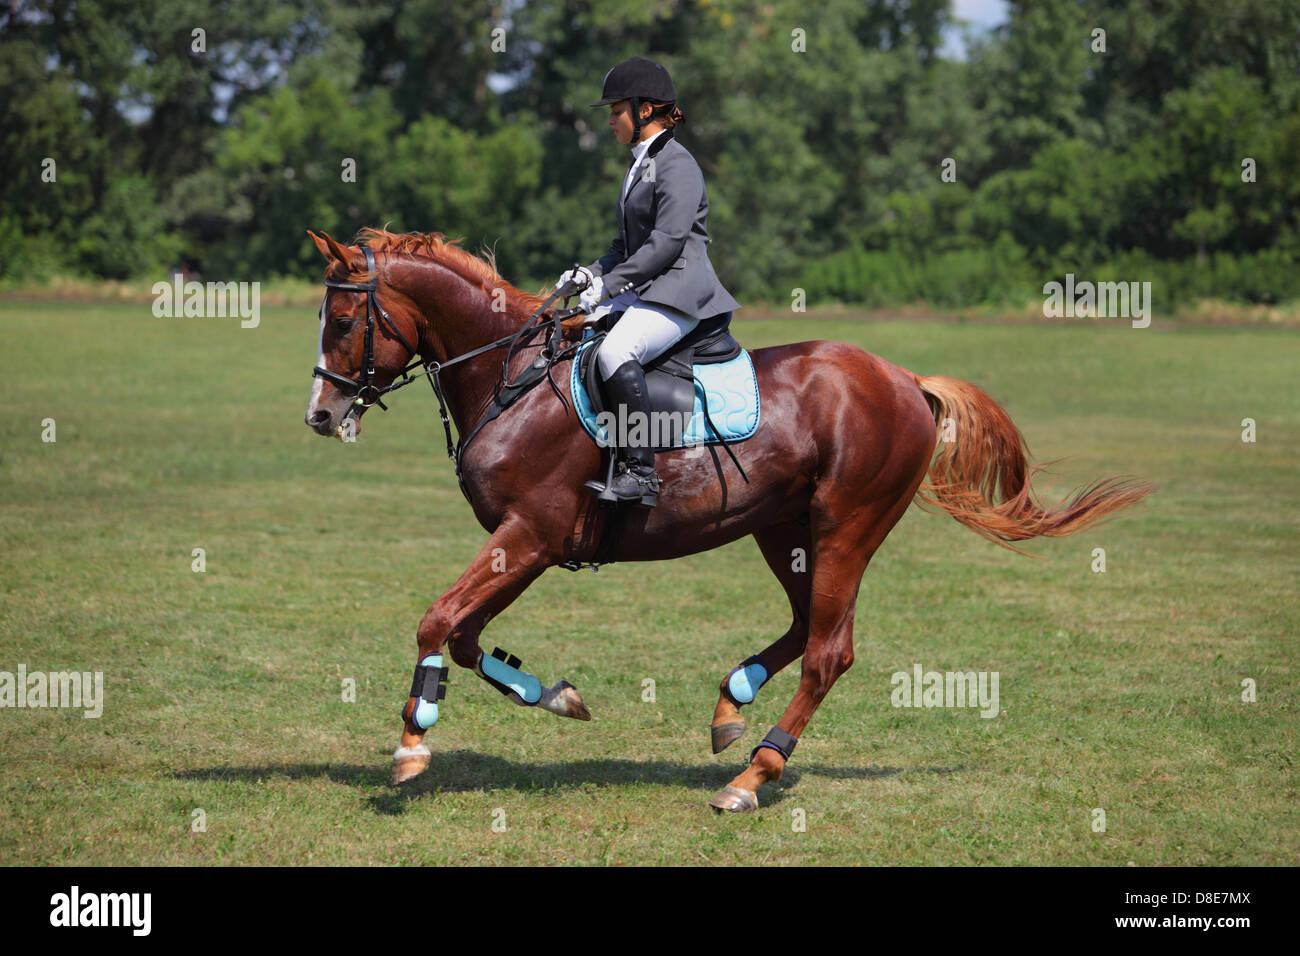 Girl horseback riding English style Stock Photo